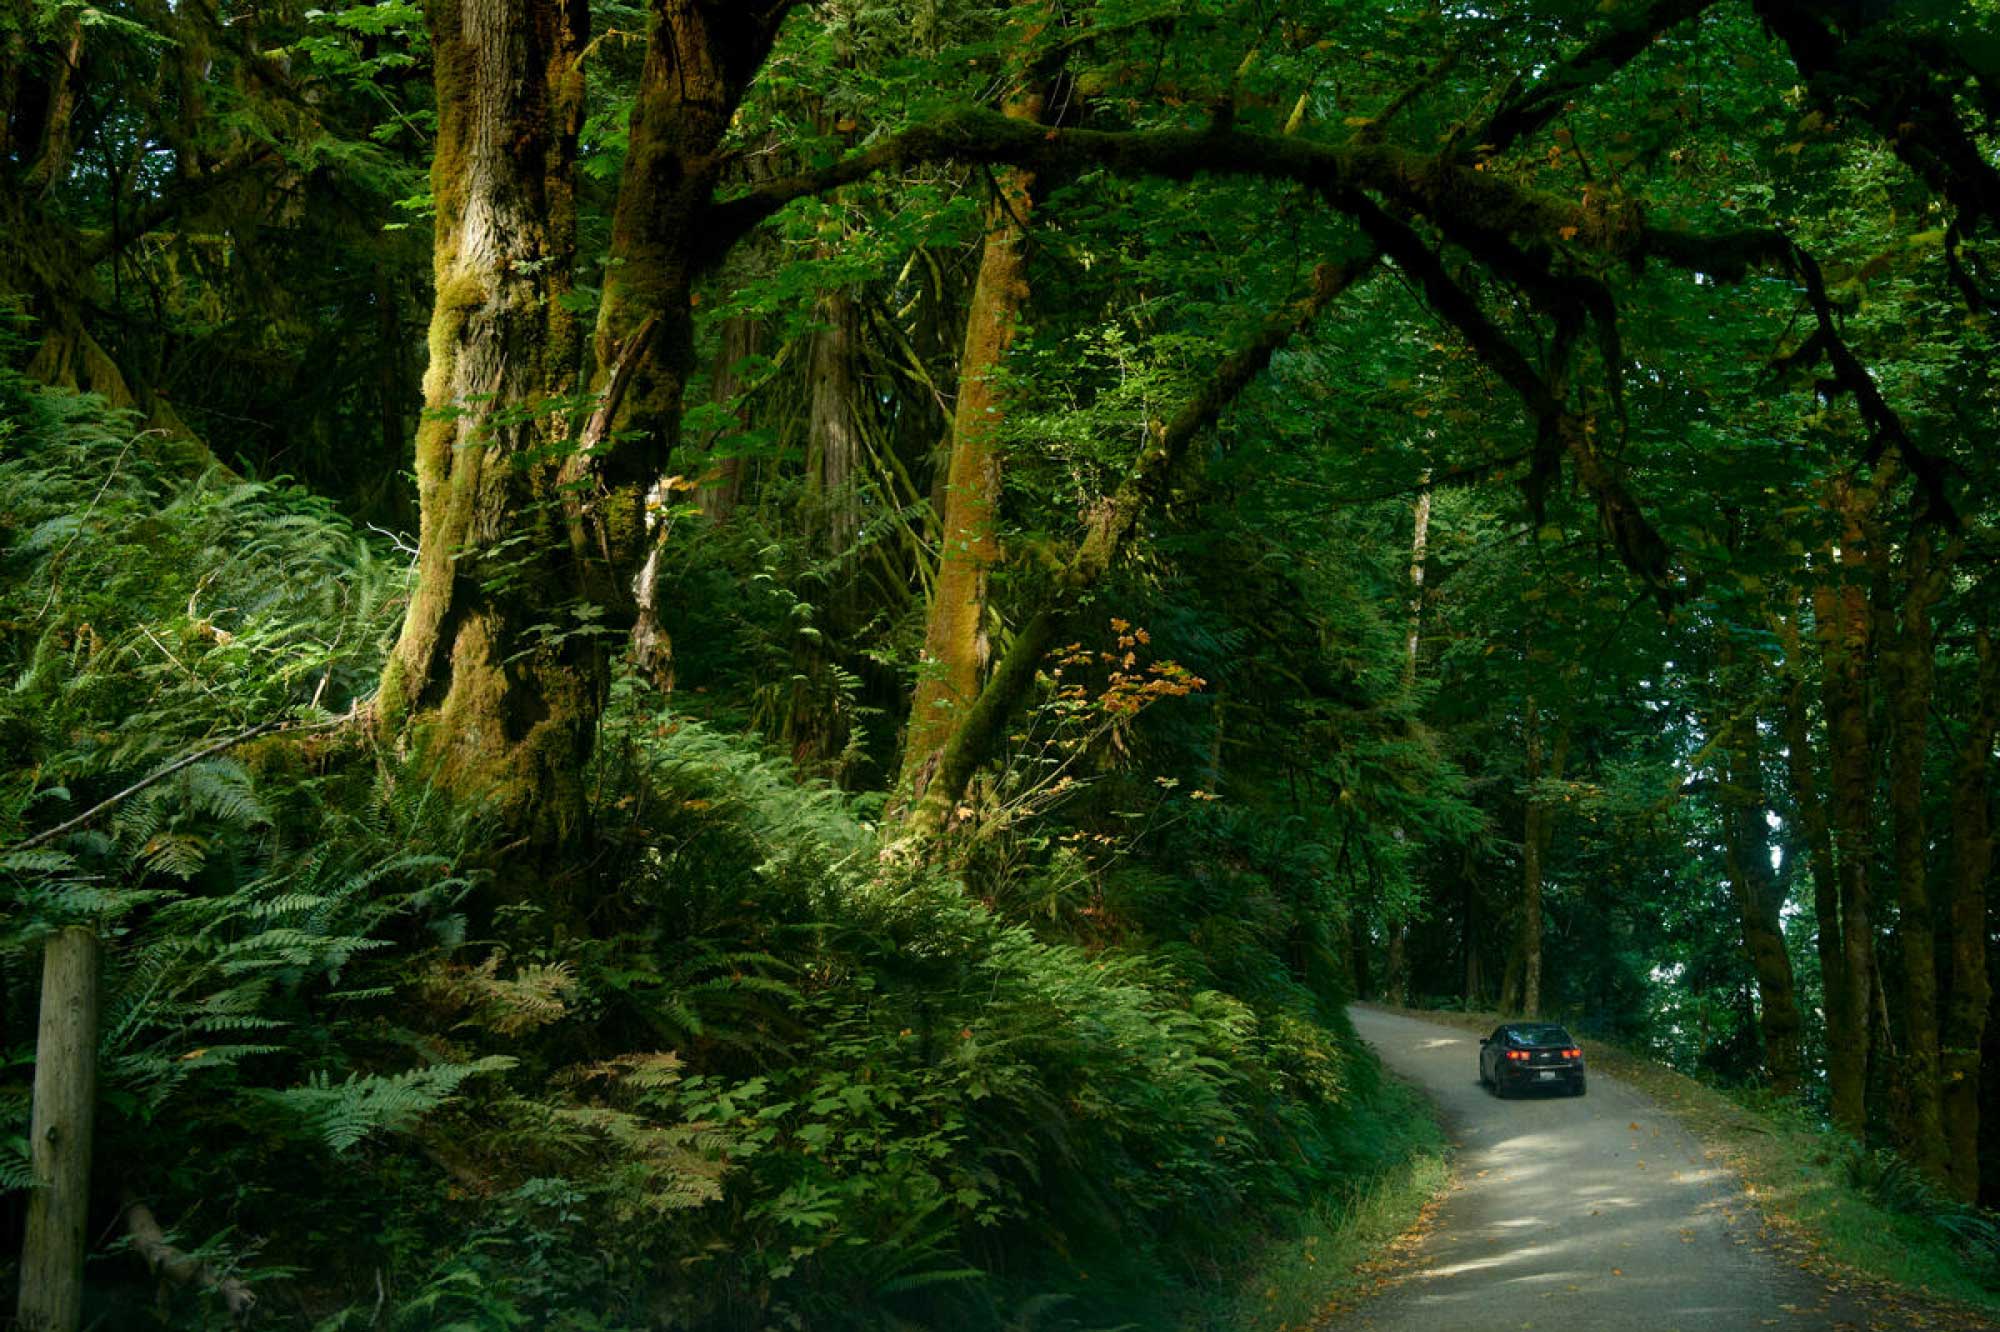 A car drives through a lush forest.